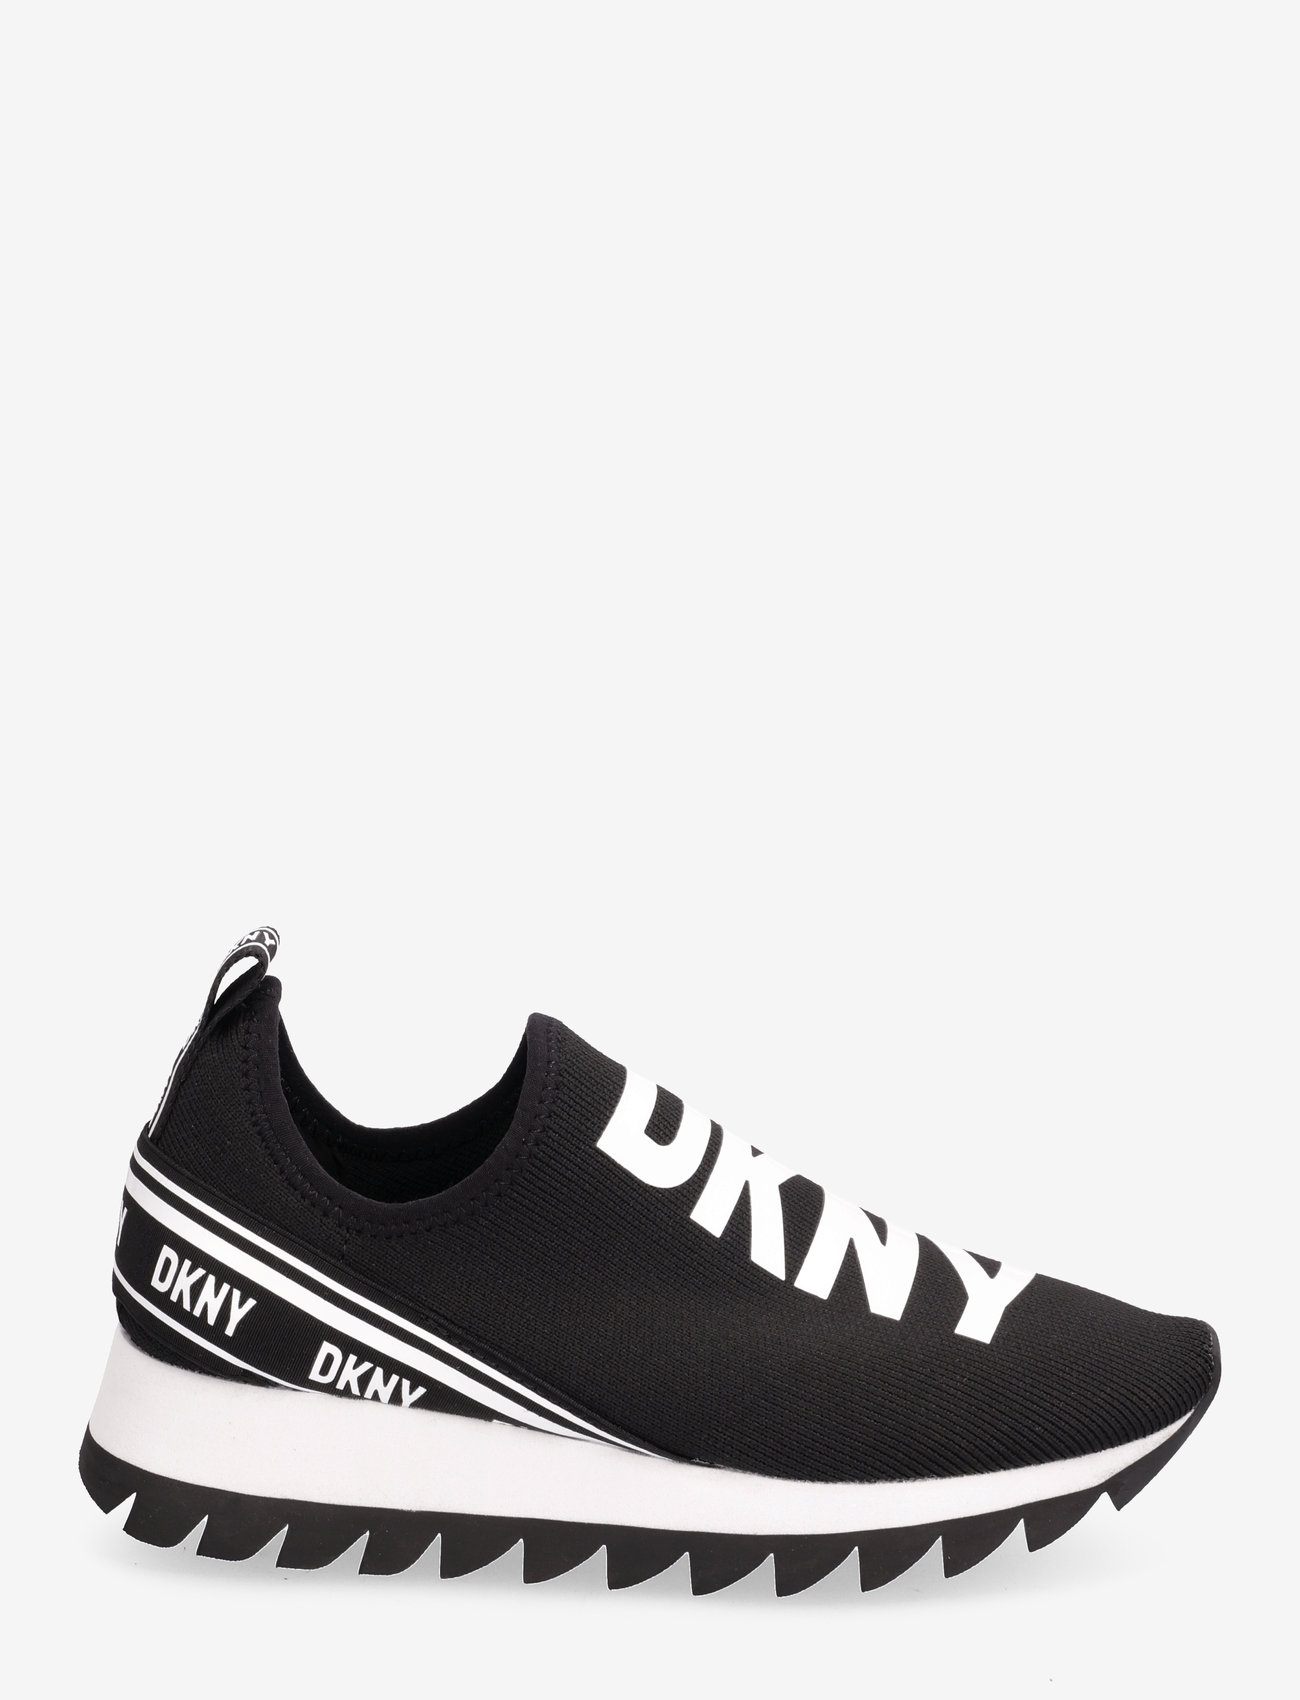 DKNY - ABBI - SLIP ON SNEAKER - 005 - black/white - 1